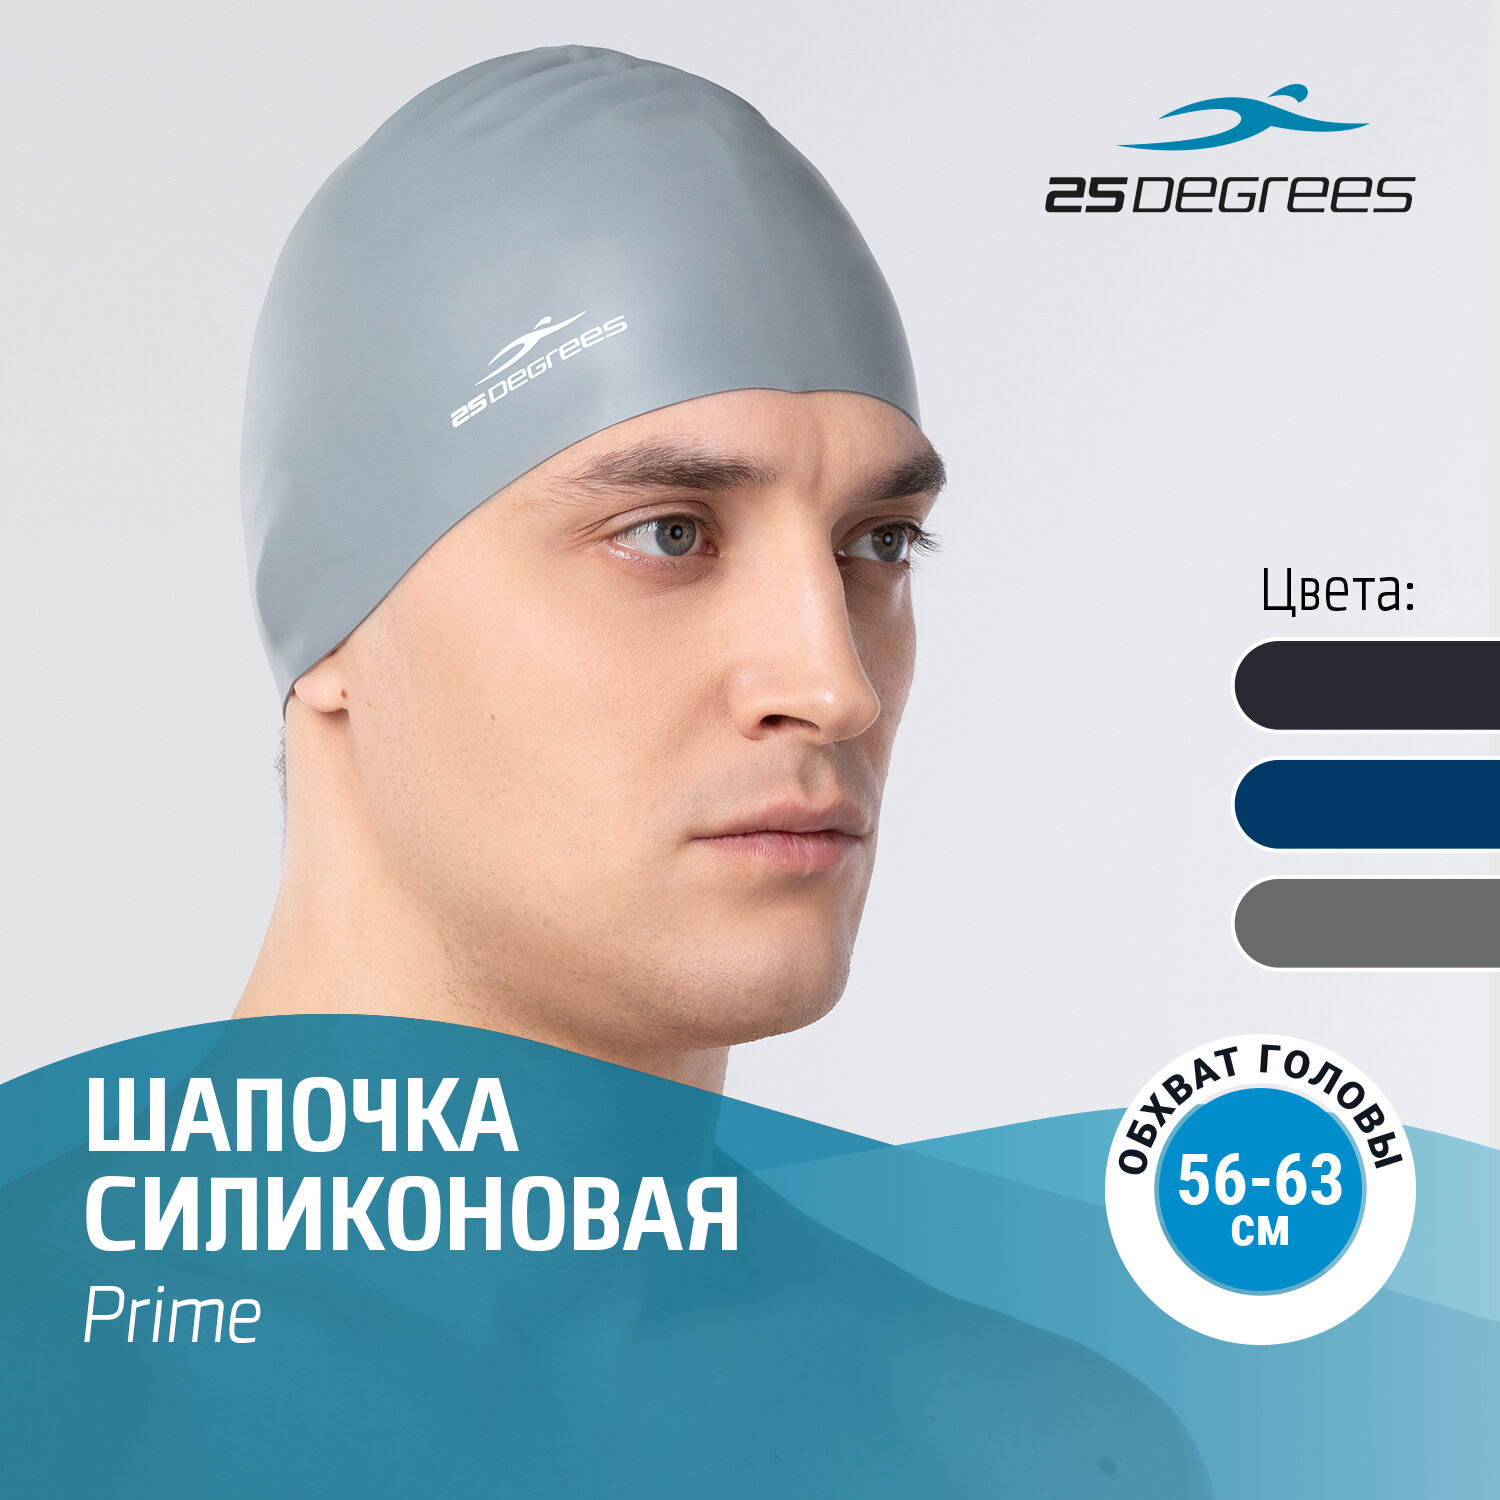 Шапочка для плавания 25DEGREES Prime Grey взрослым и детям, размер 56-63 см, силиконовая, цвет серый